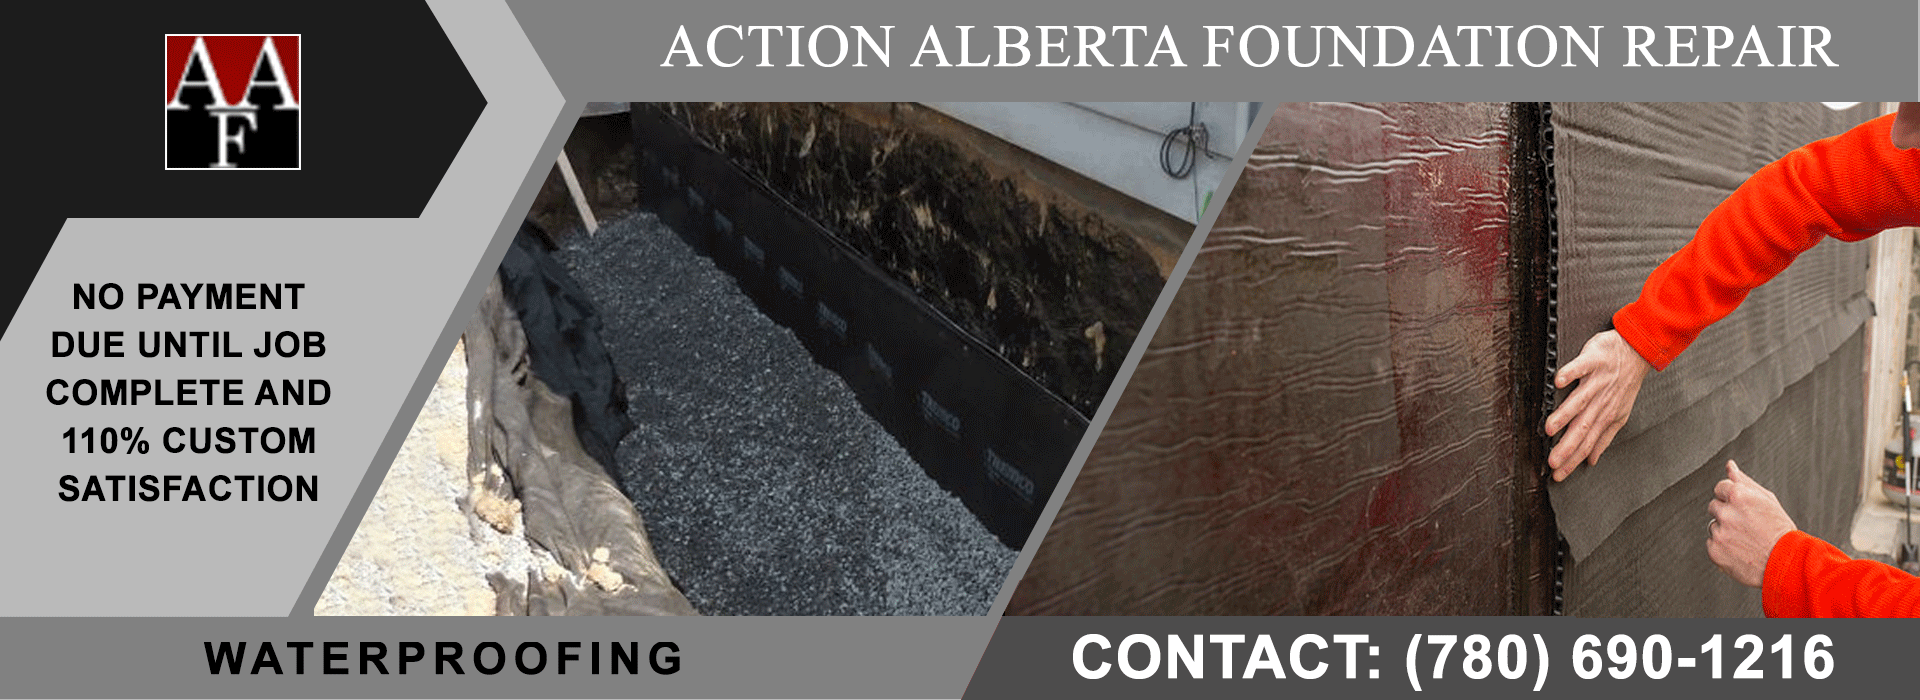 Action Alberta Foundation Repair in Edmonton